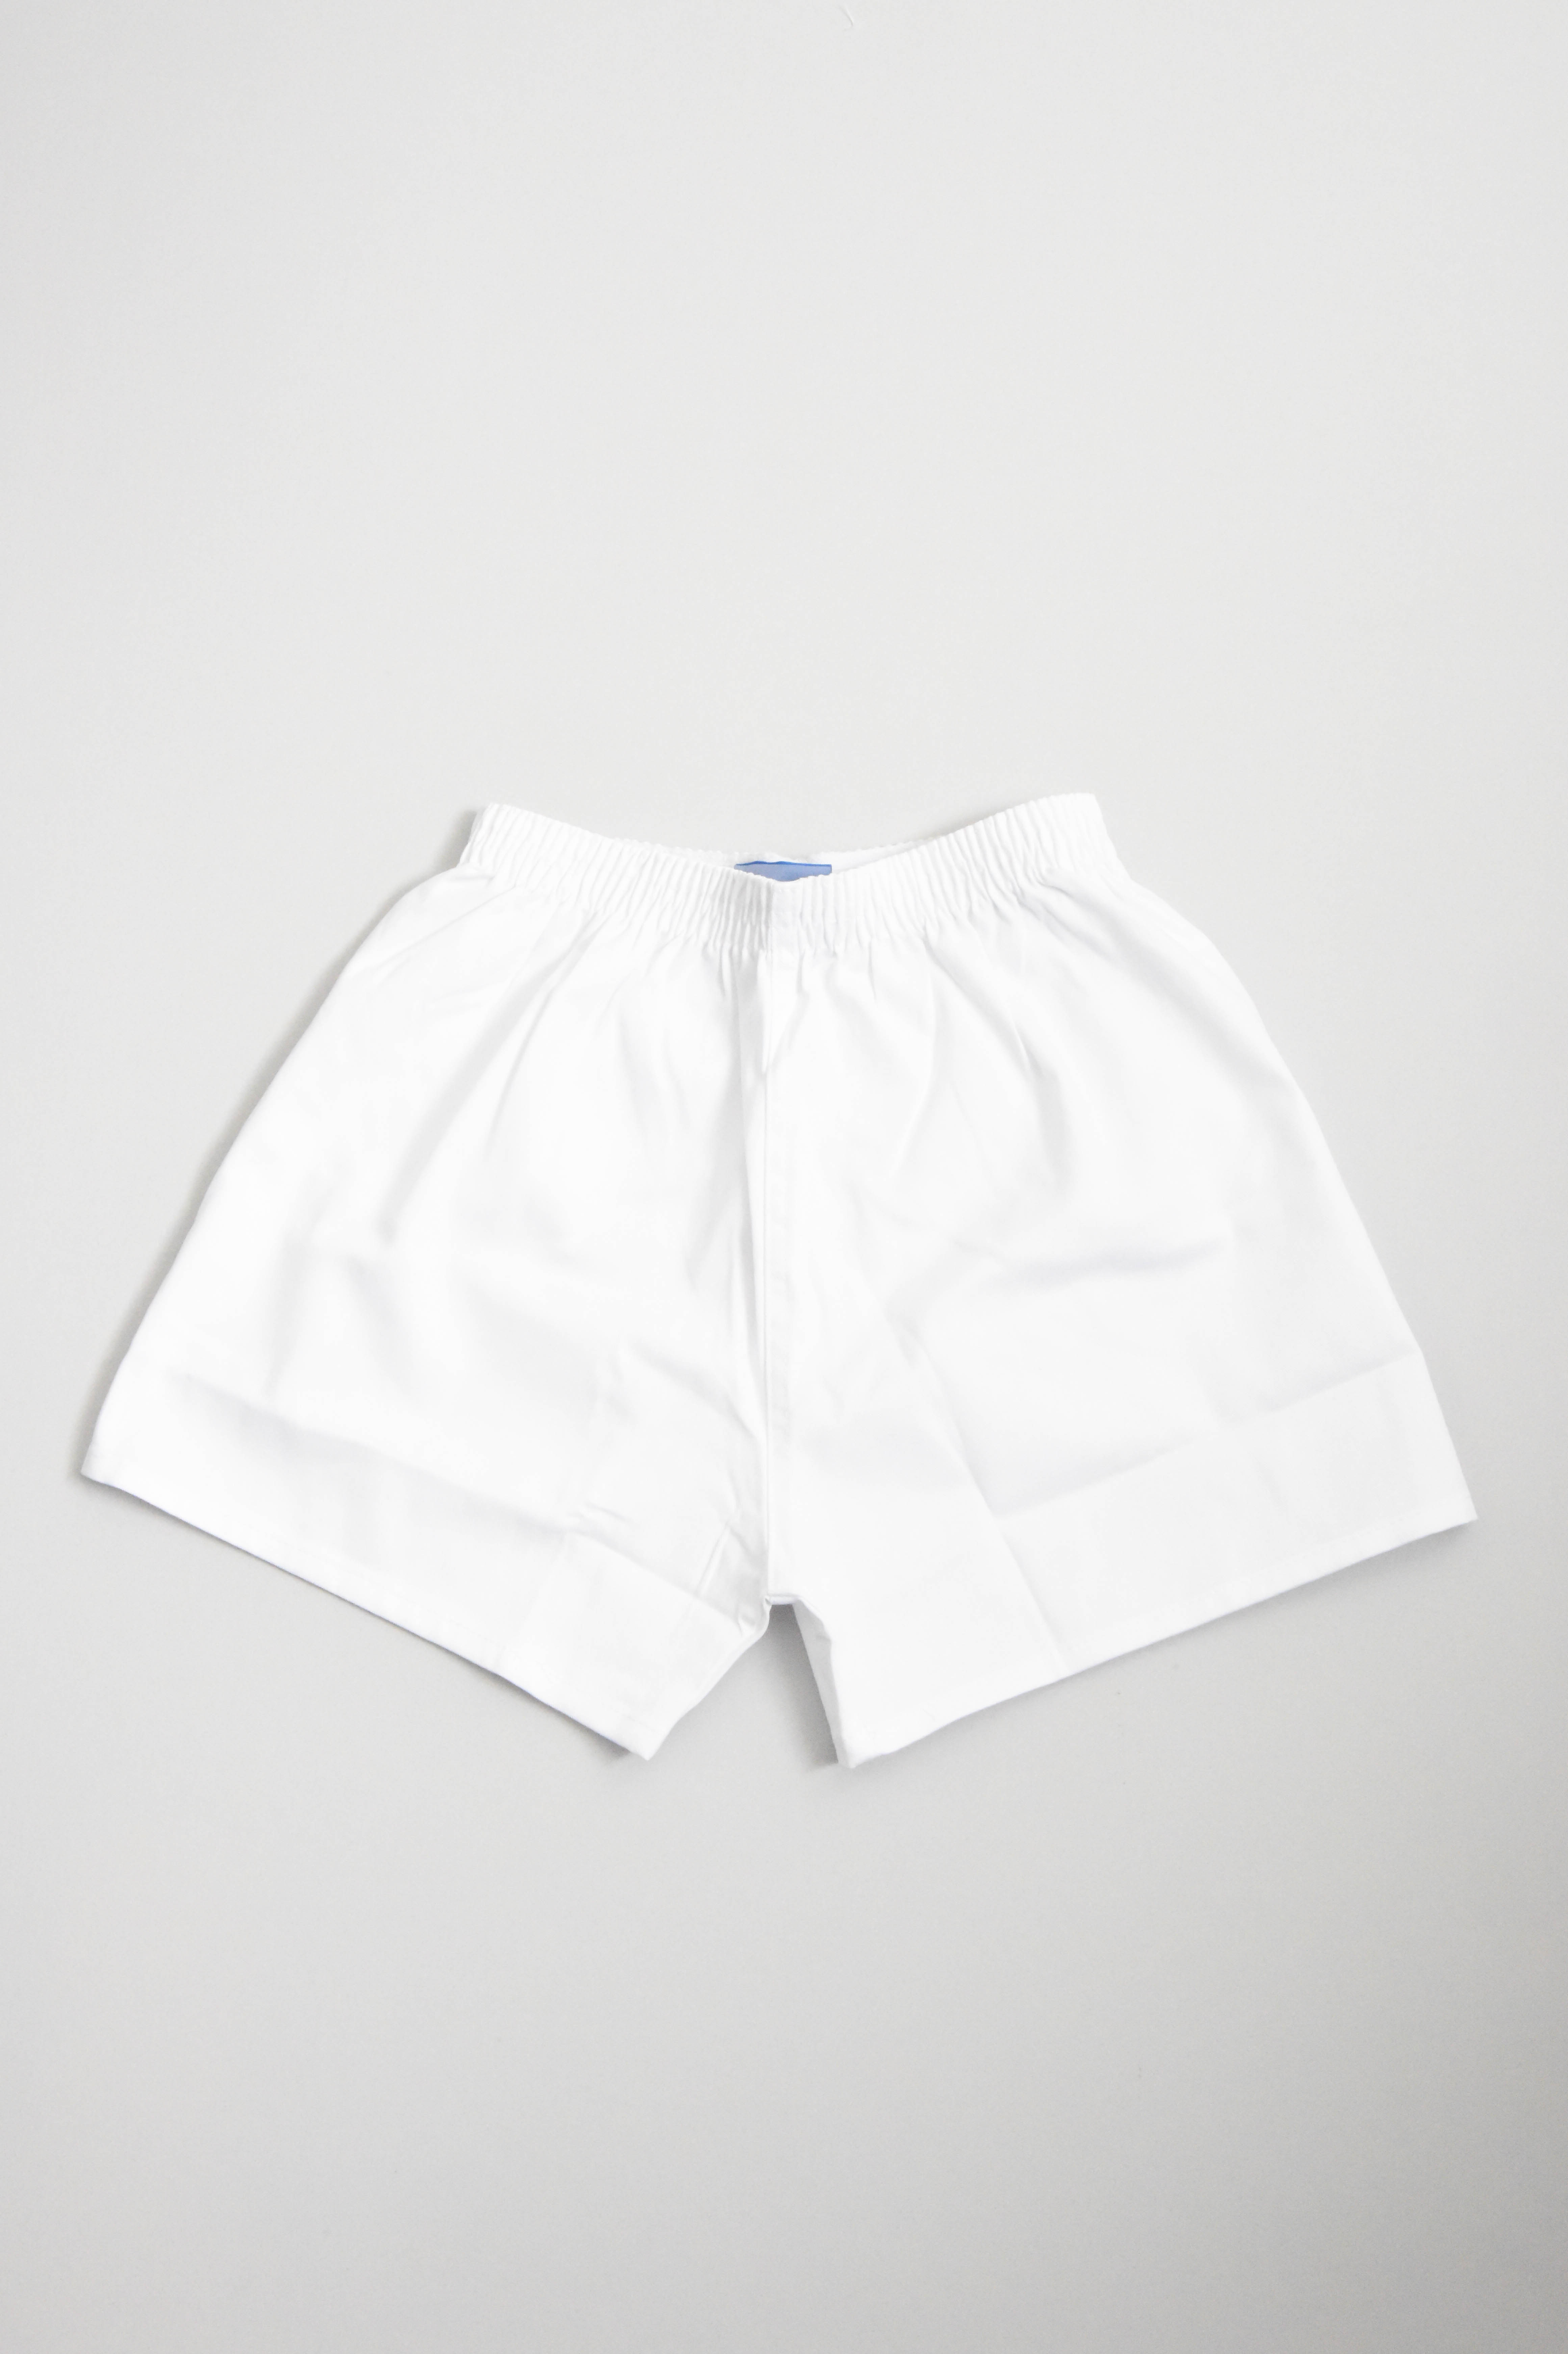 White P.E Shorts (Boys & Girls) - 20/22"